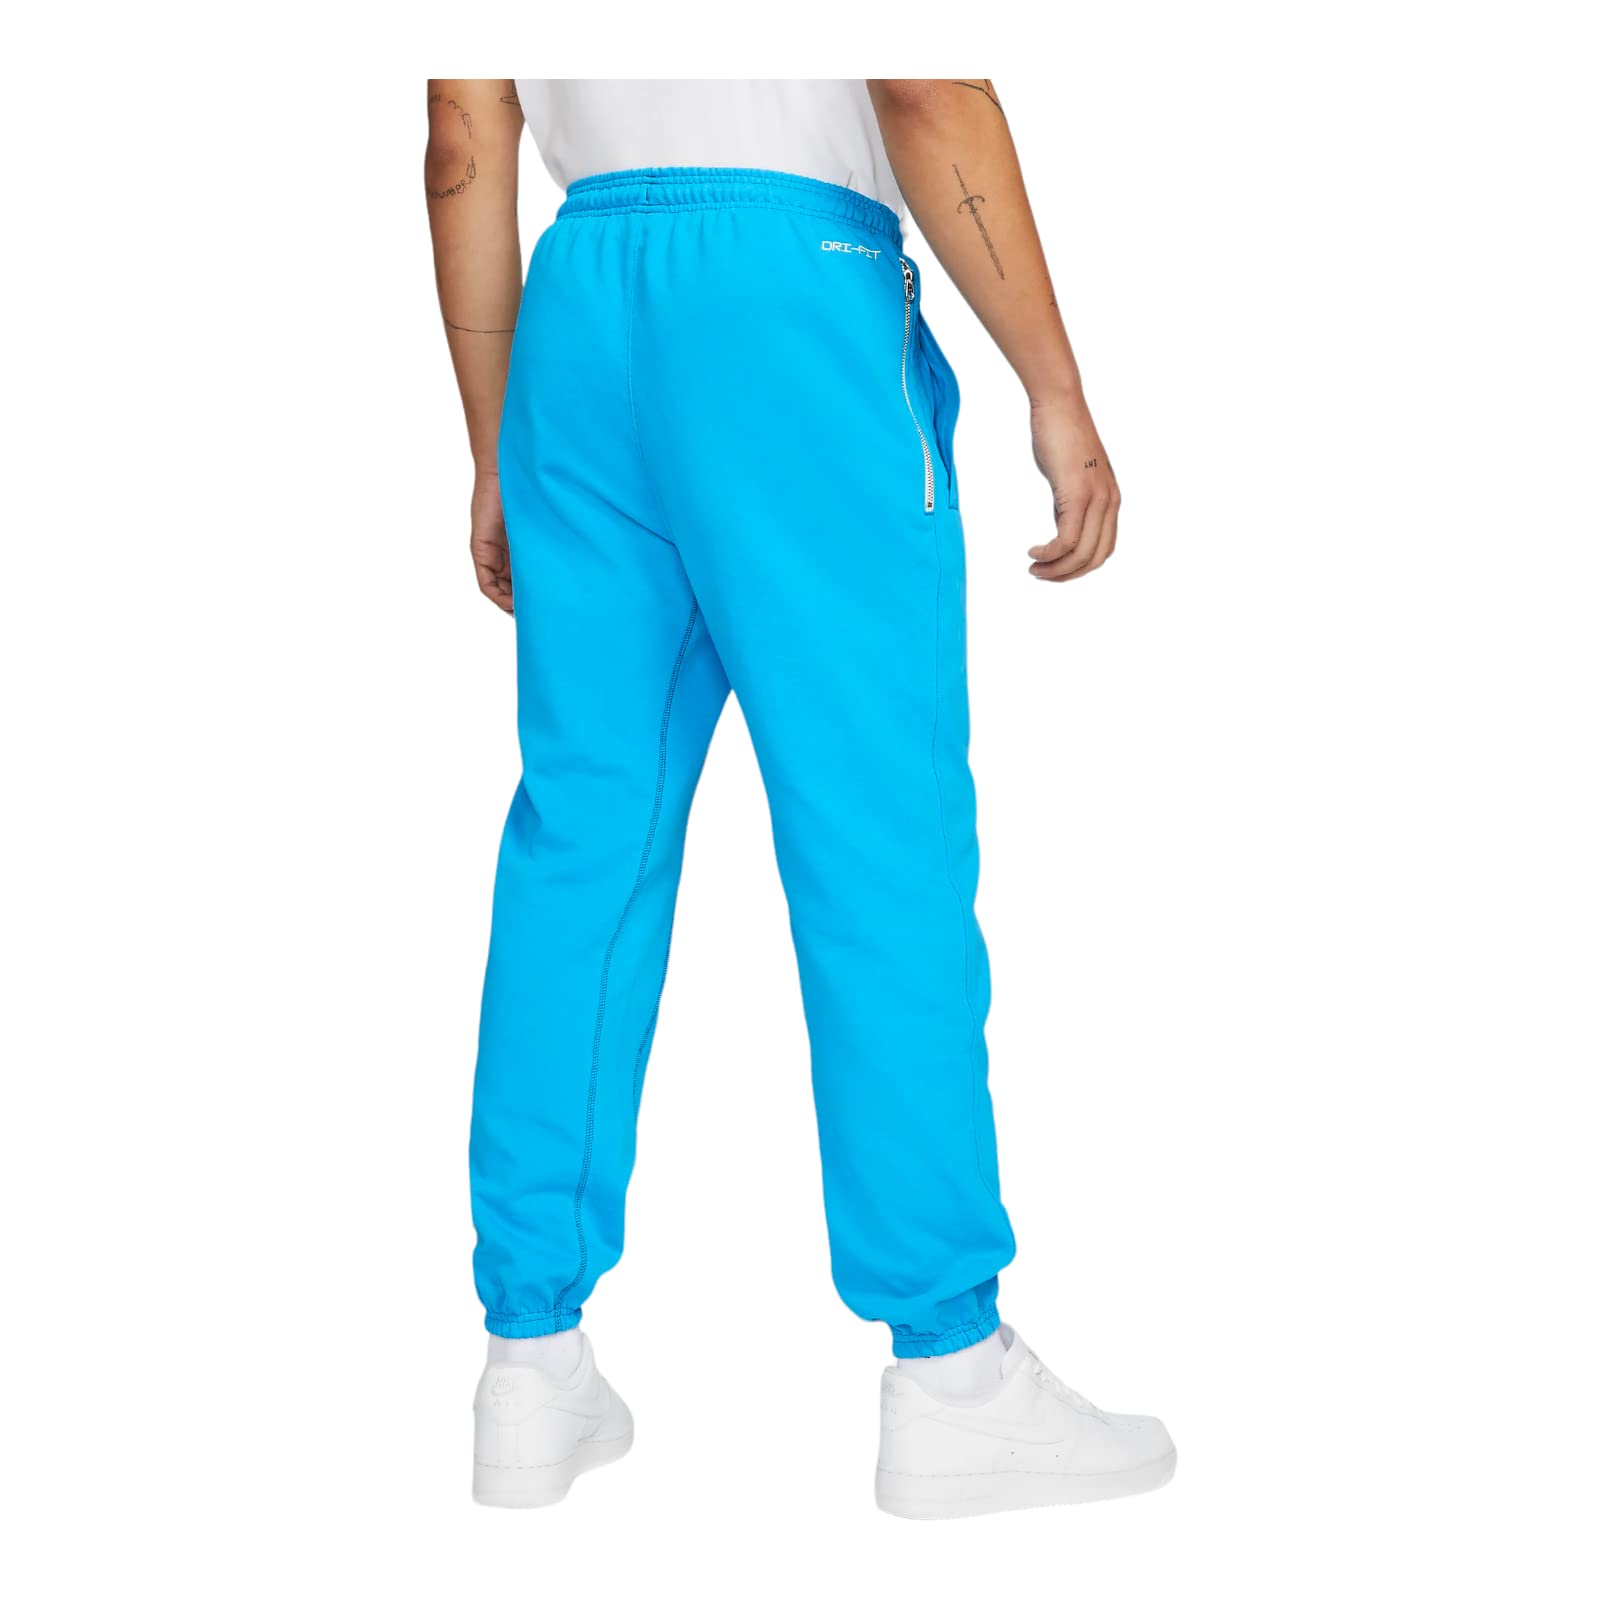 Nike | Pants | Mens Nike Dri Fit Grey Long Athletic Pants Size Small |  Poshmark